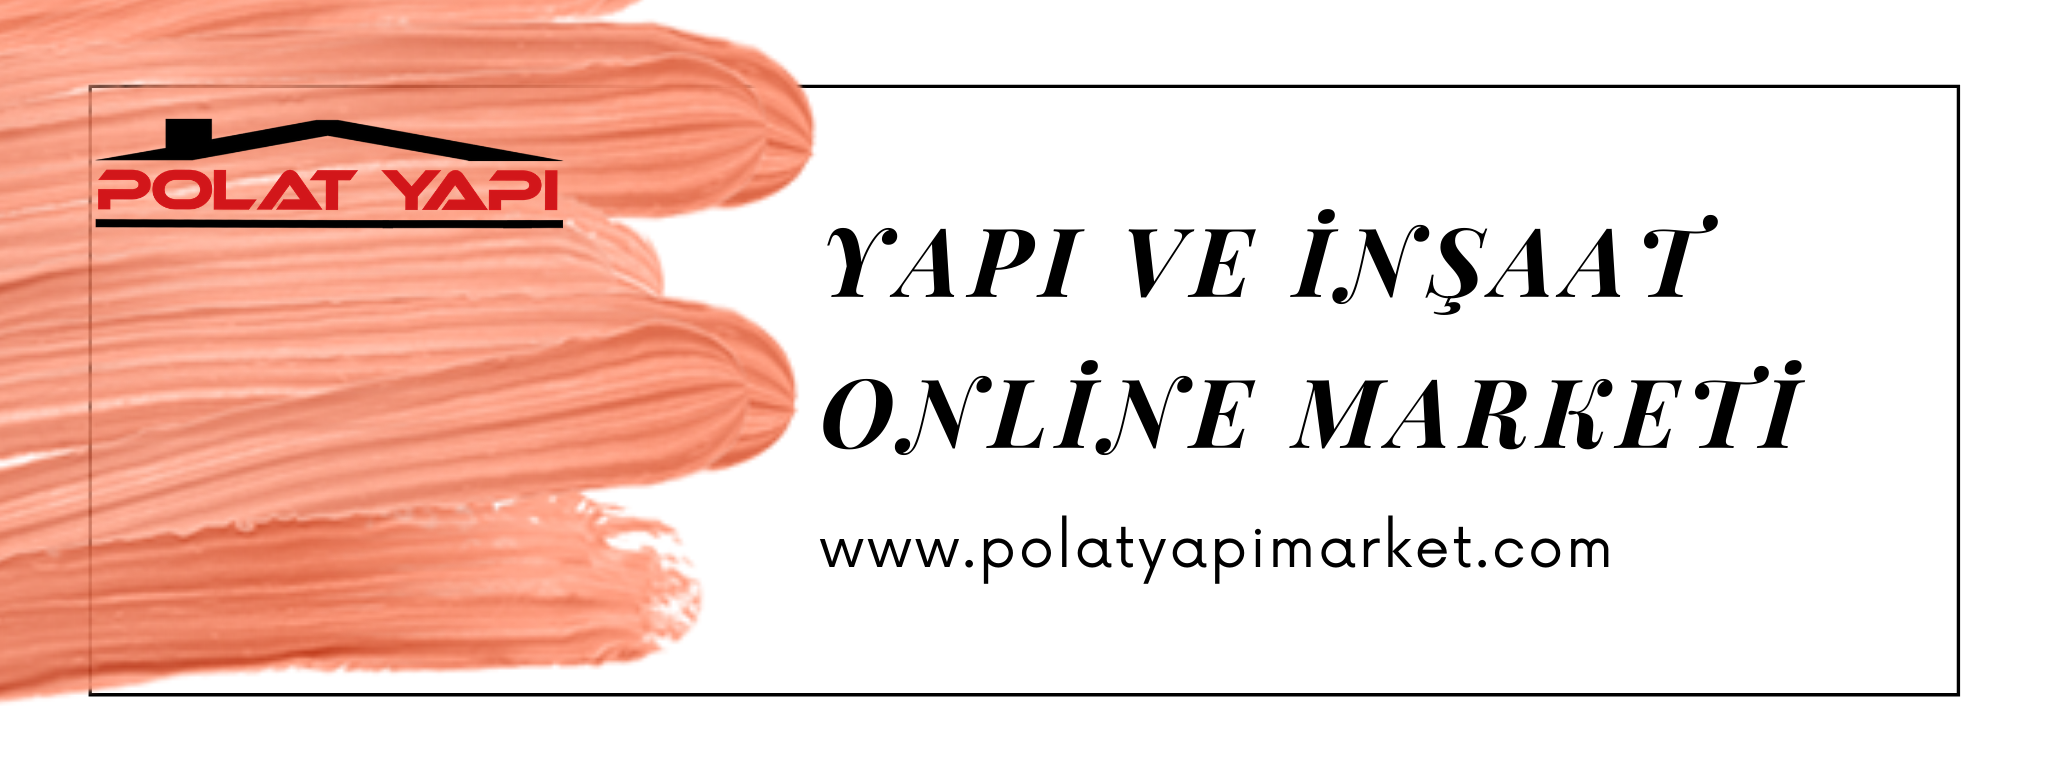 www.polatyapimarket.com